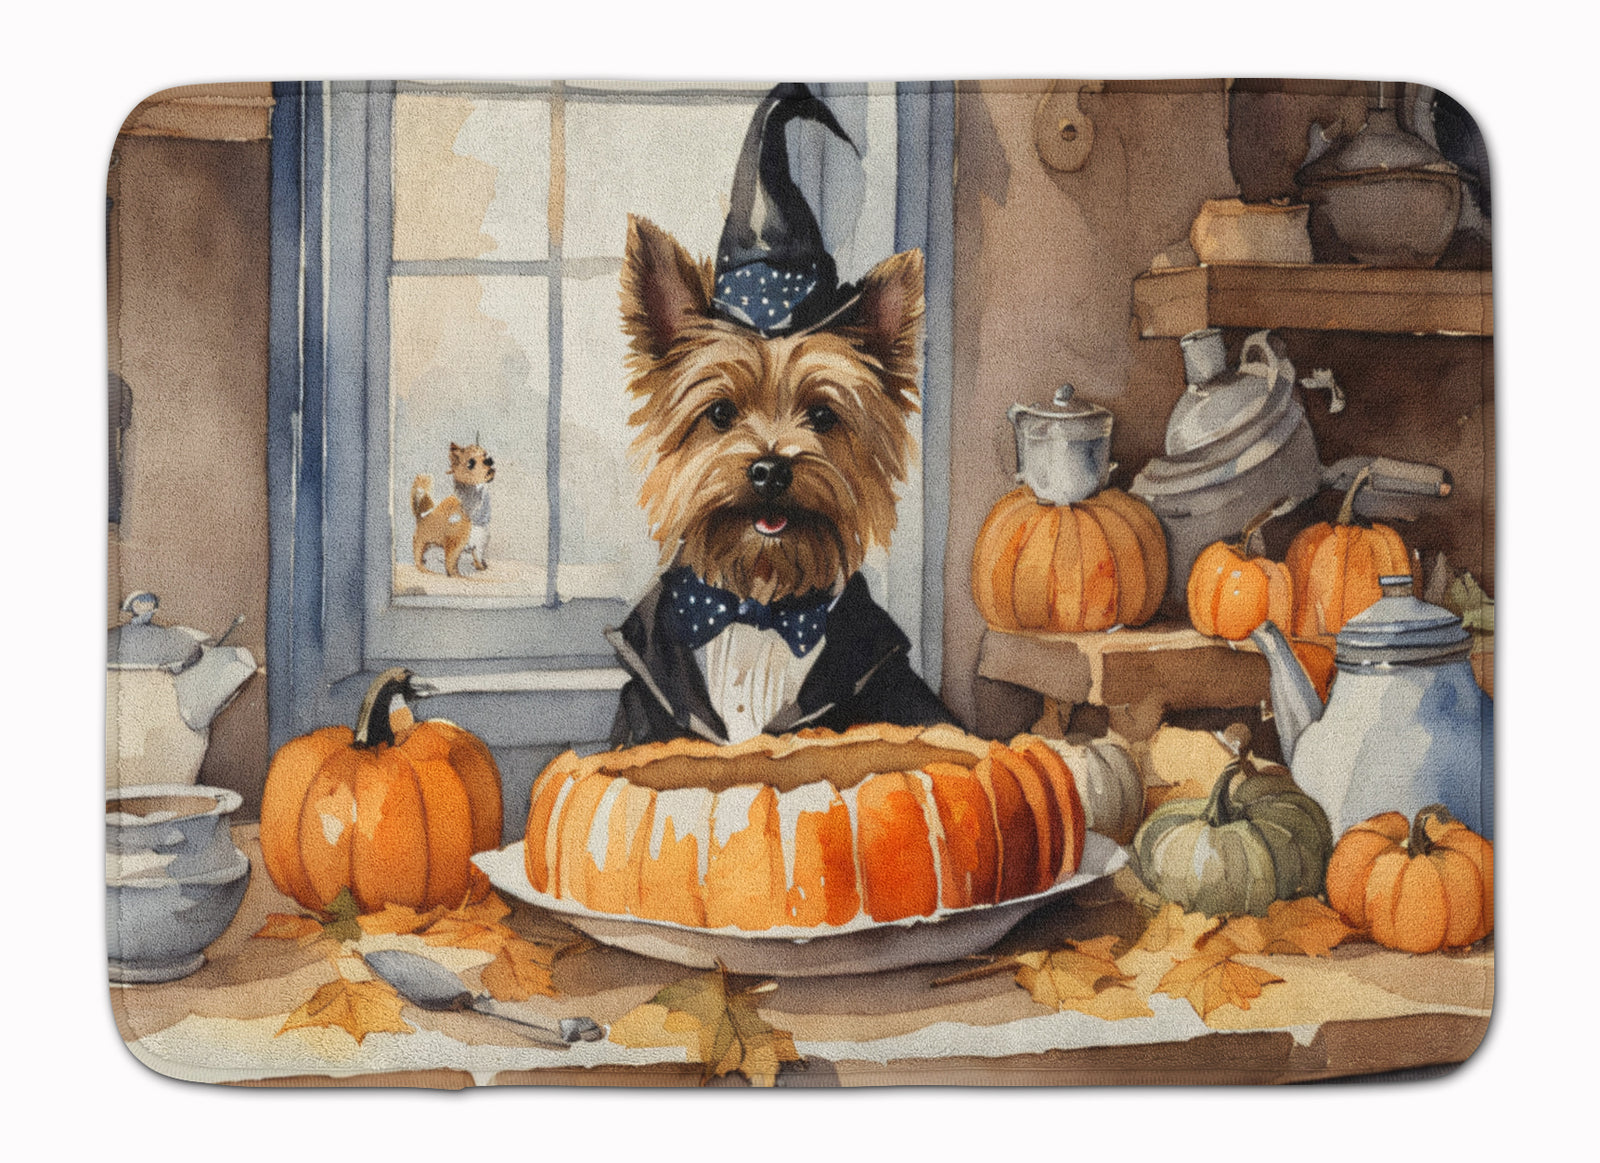 Buy this Cairn Terrier Fall Kitchen Pumpkins Memory Foam Kitchen Mat